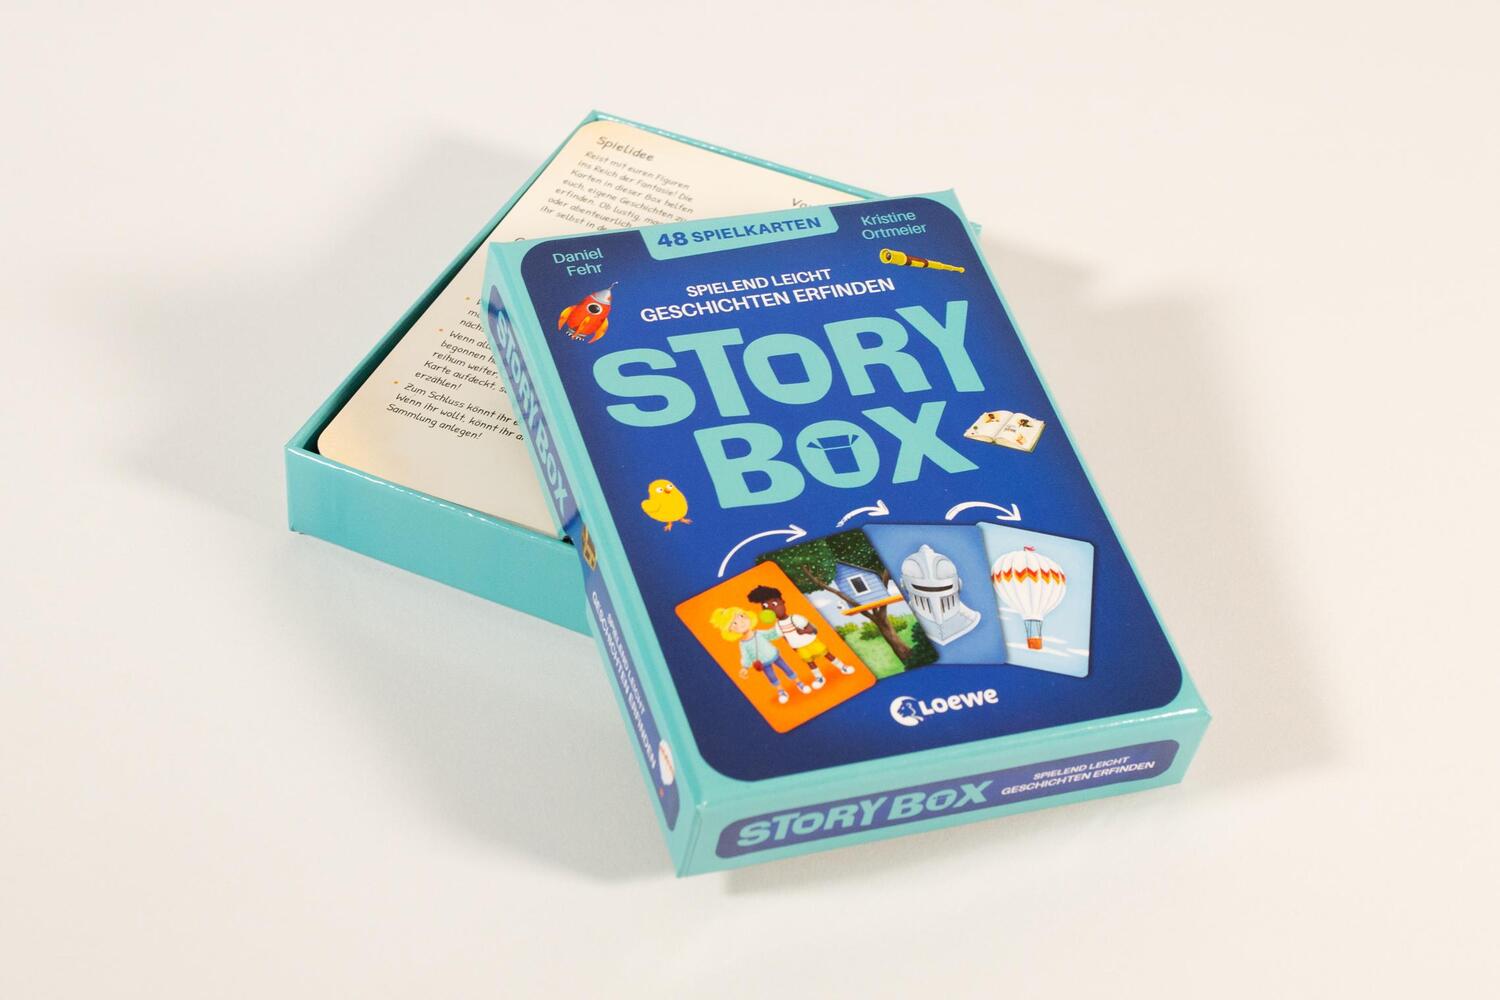 Bild: 9783743217263 | Story Box - Spielend leicht Geschichten erfinden | Daniel Fehr | Spiel